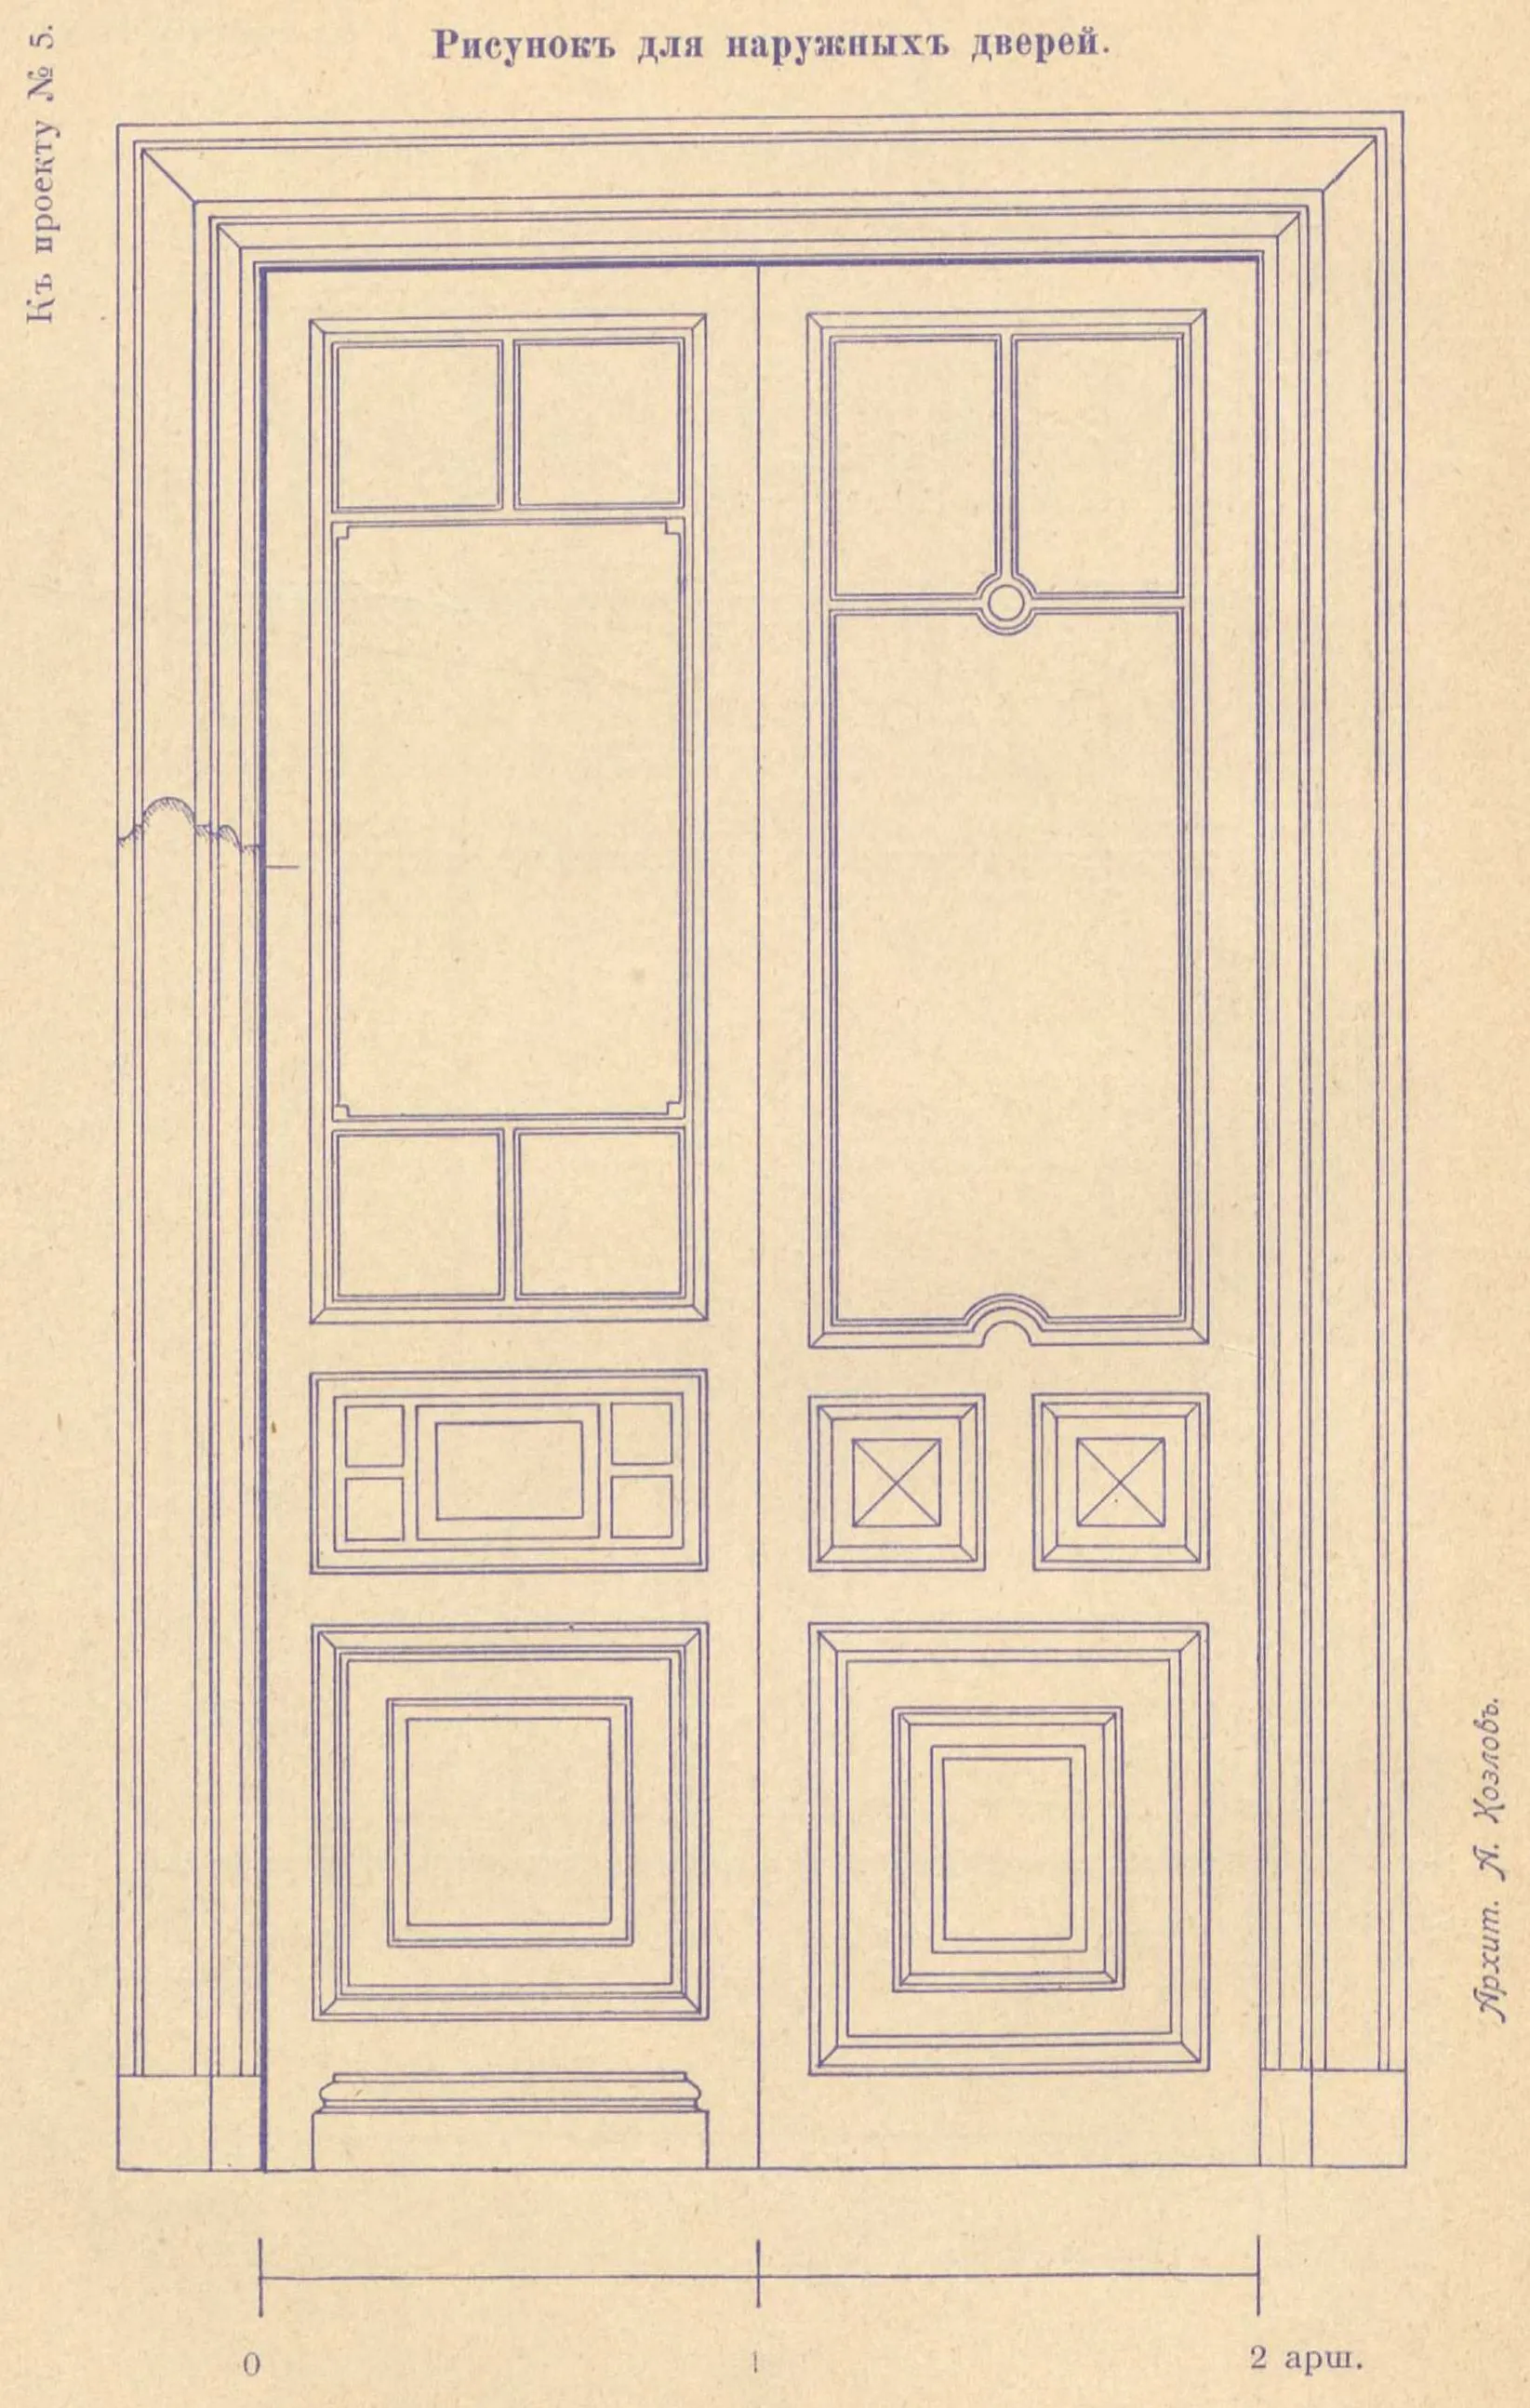 К проекту № 5. Архит. А. Козлов. Рисунок для наружных дверей.